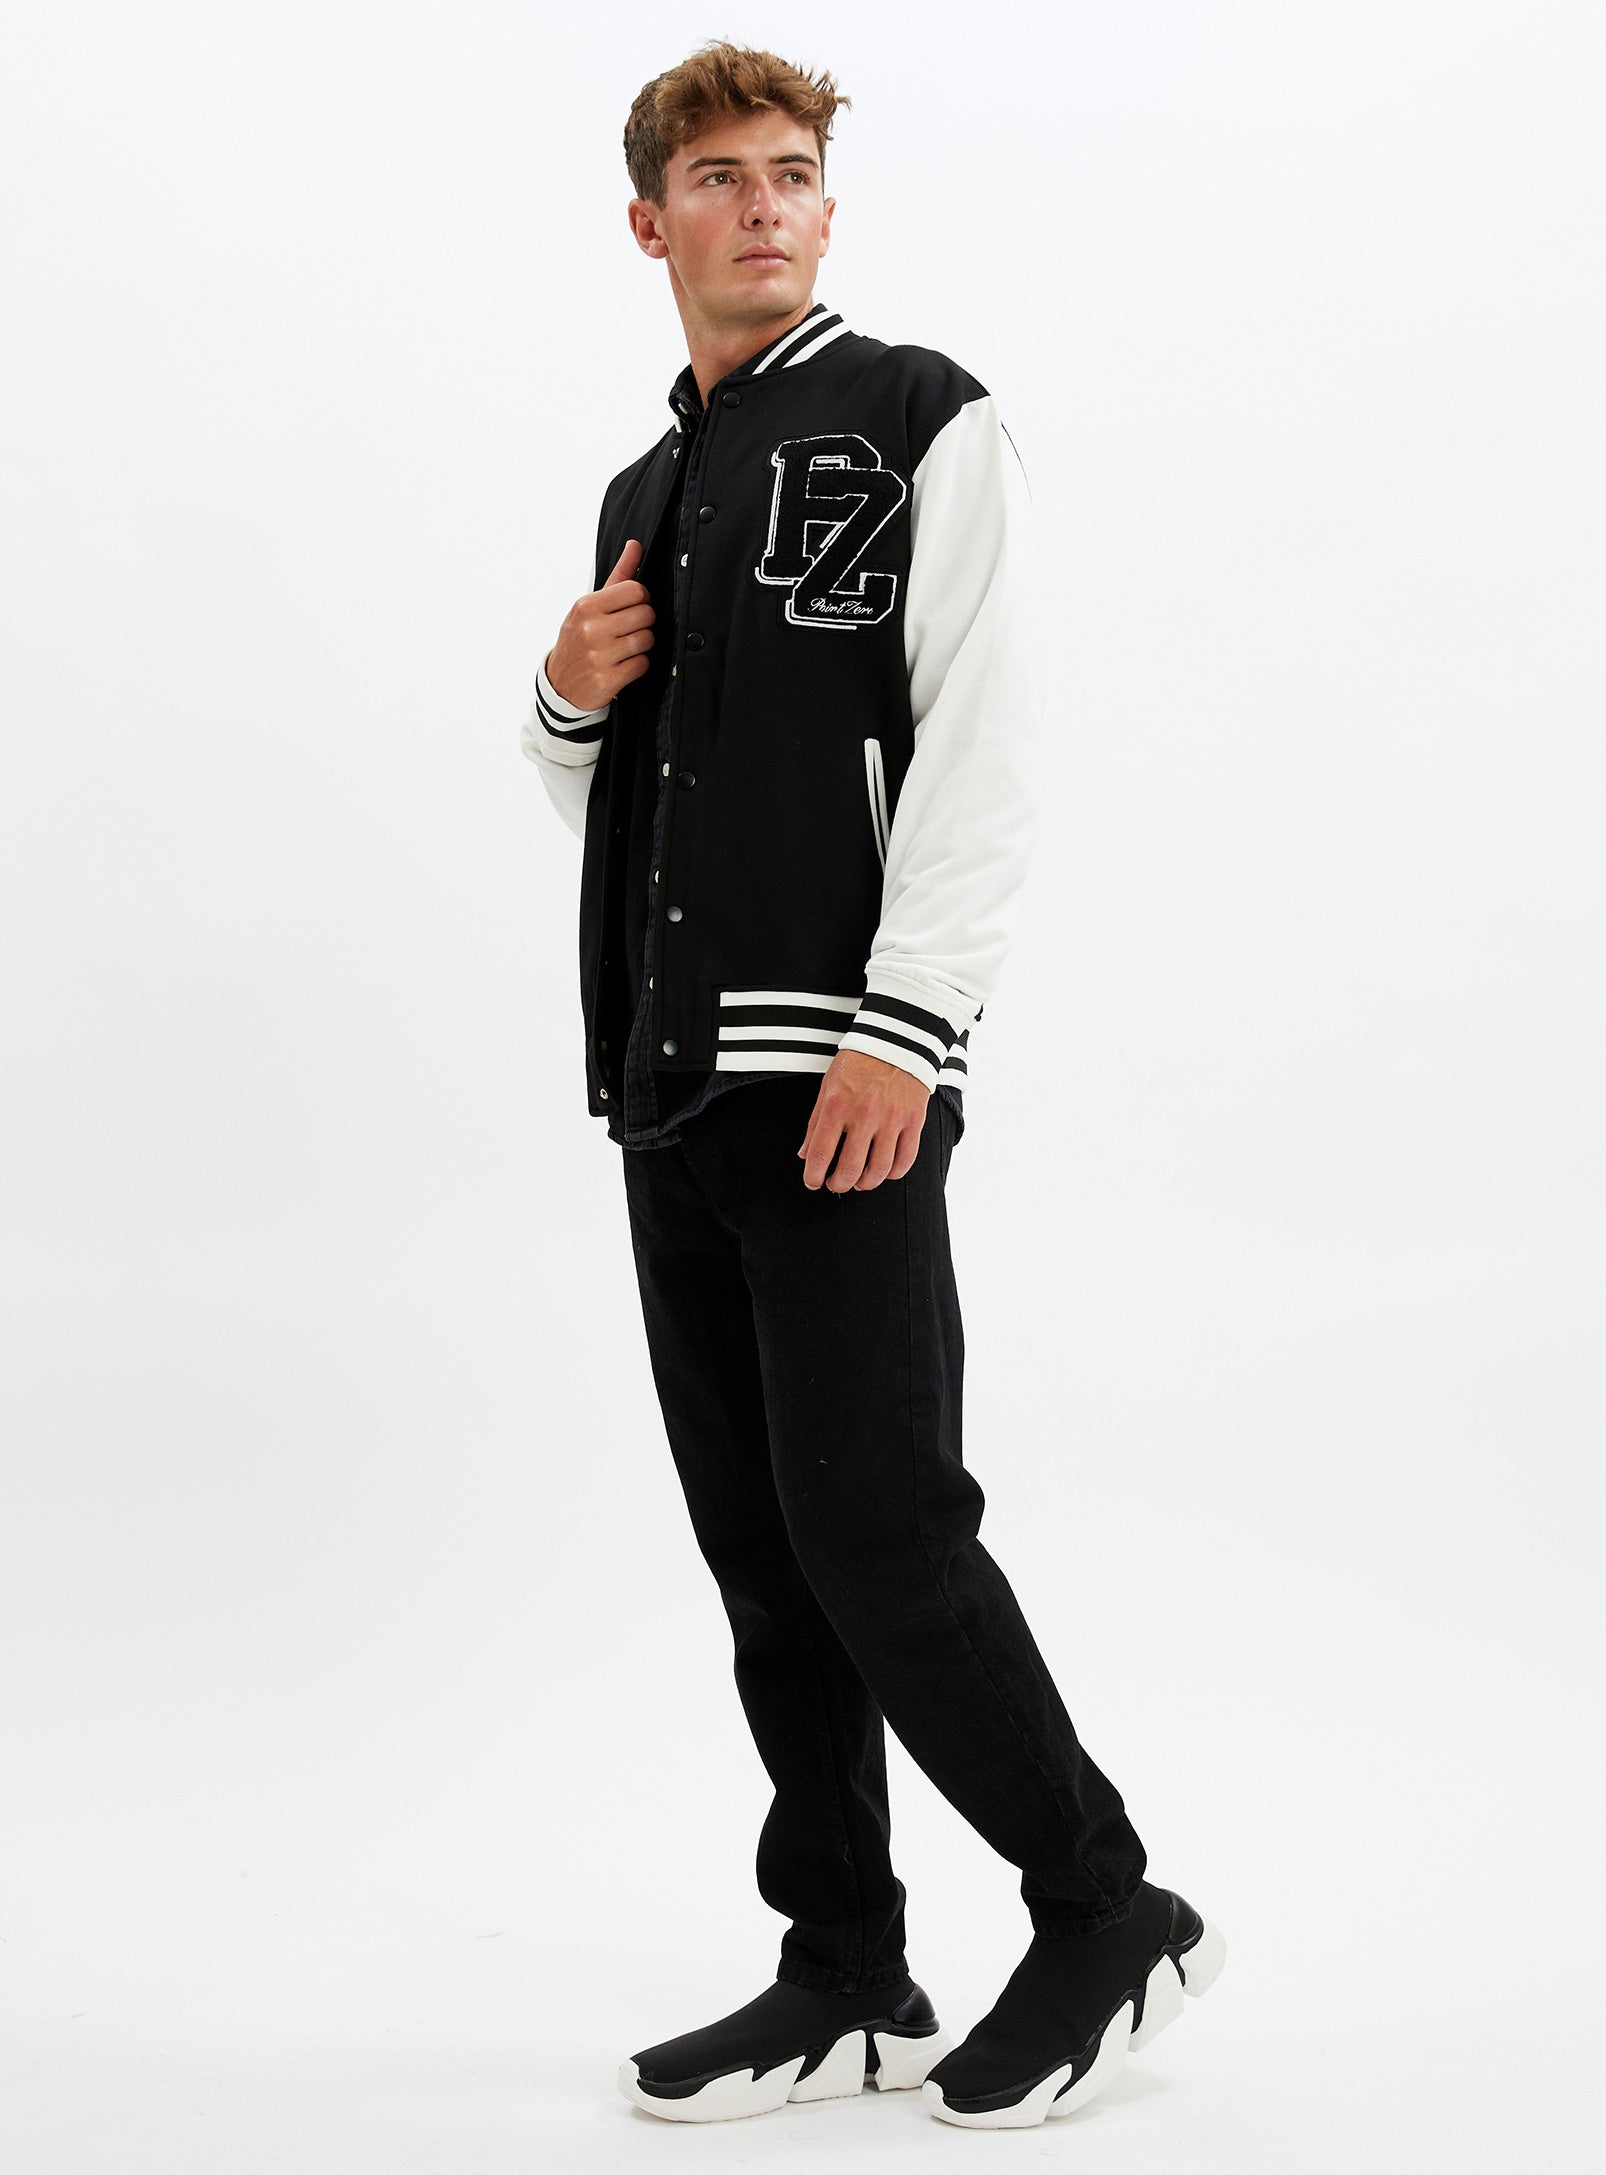 YORKDALE | Unisex limited edition varsity fleece jacket